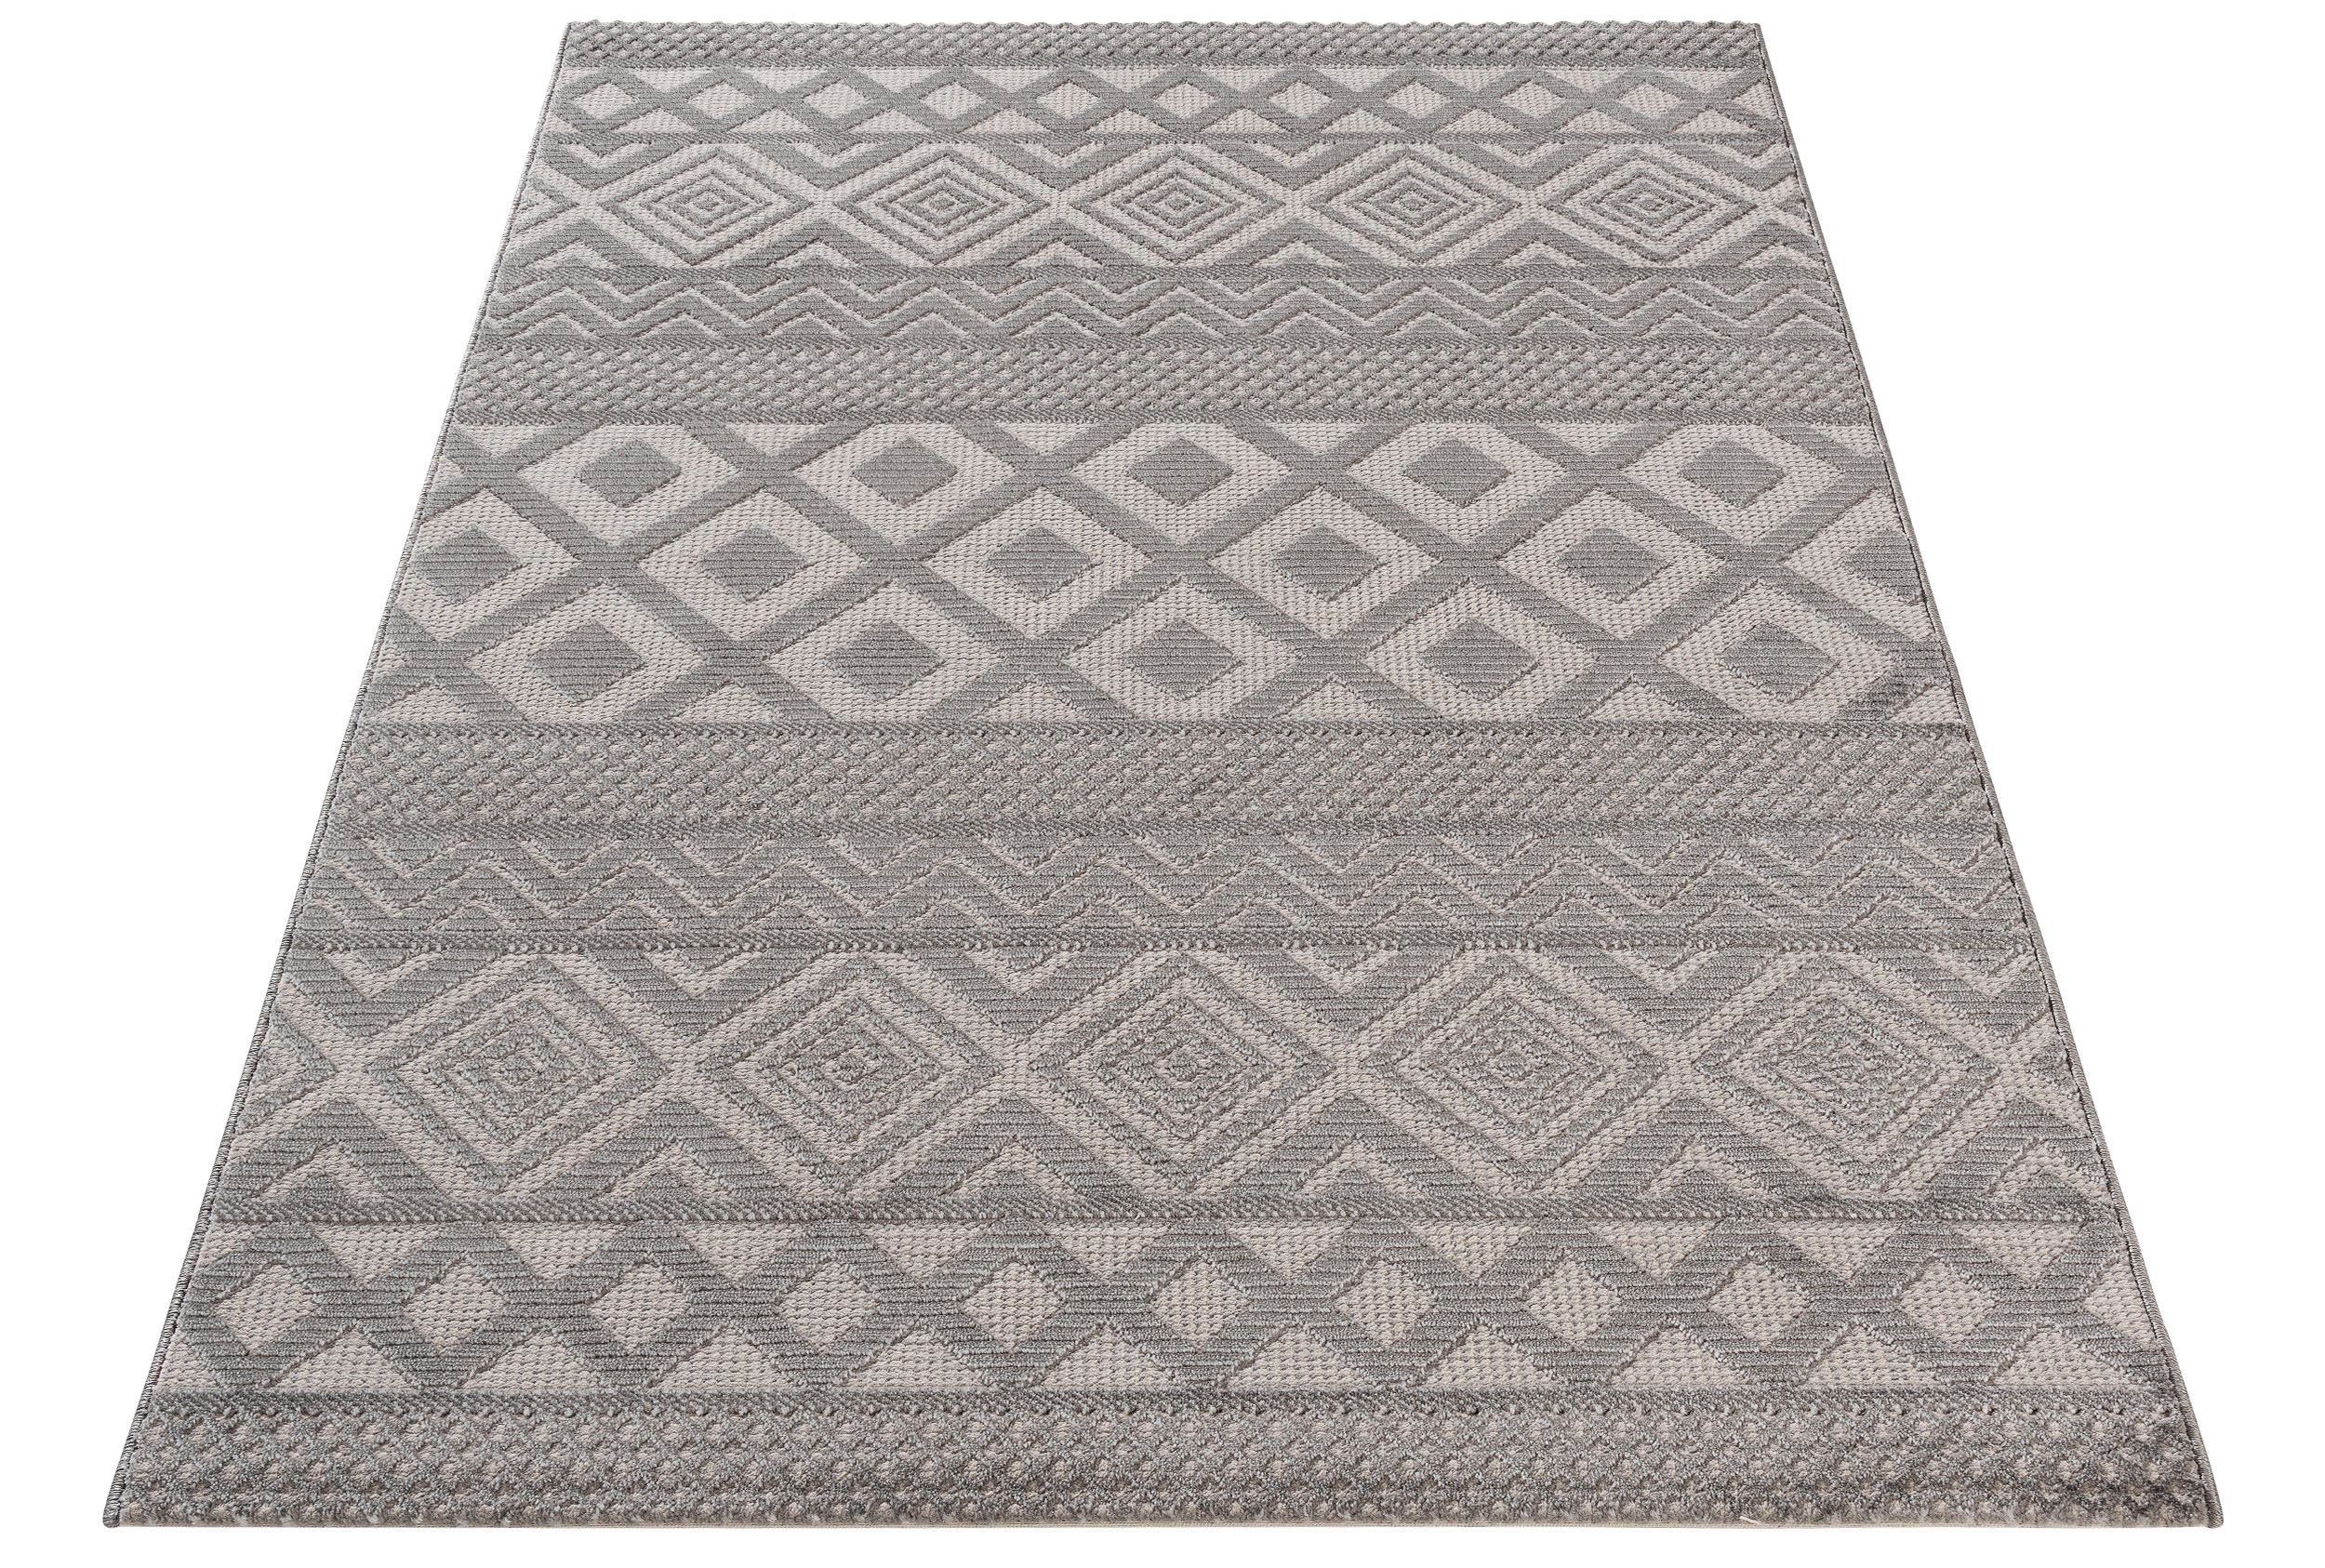 SEHRAZAT Vloerkleed- Oosters tapijt Luxury Reliëfstructuur, woonkamer, geodriehoek patroon, grijs 80x150 cm